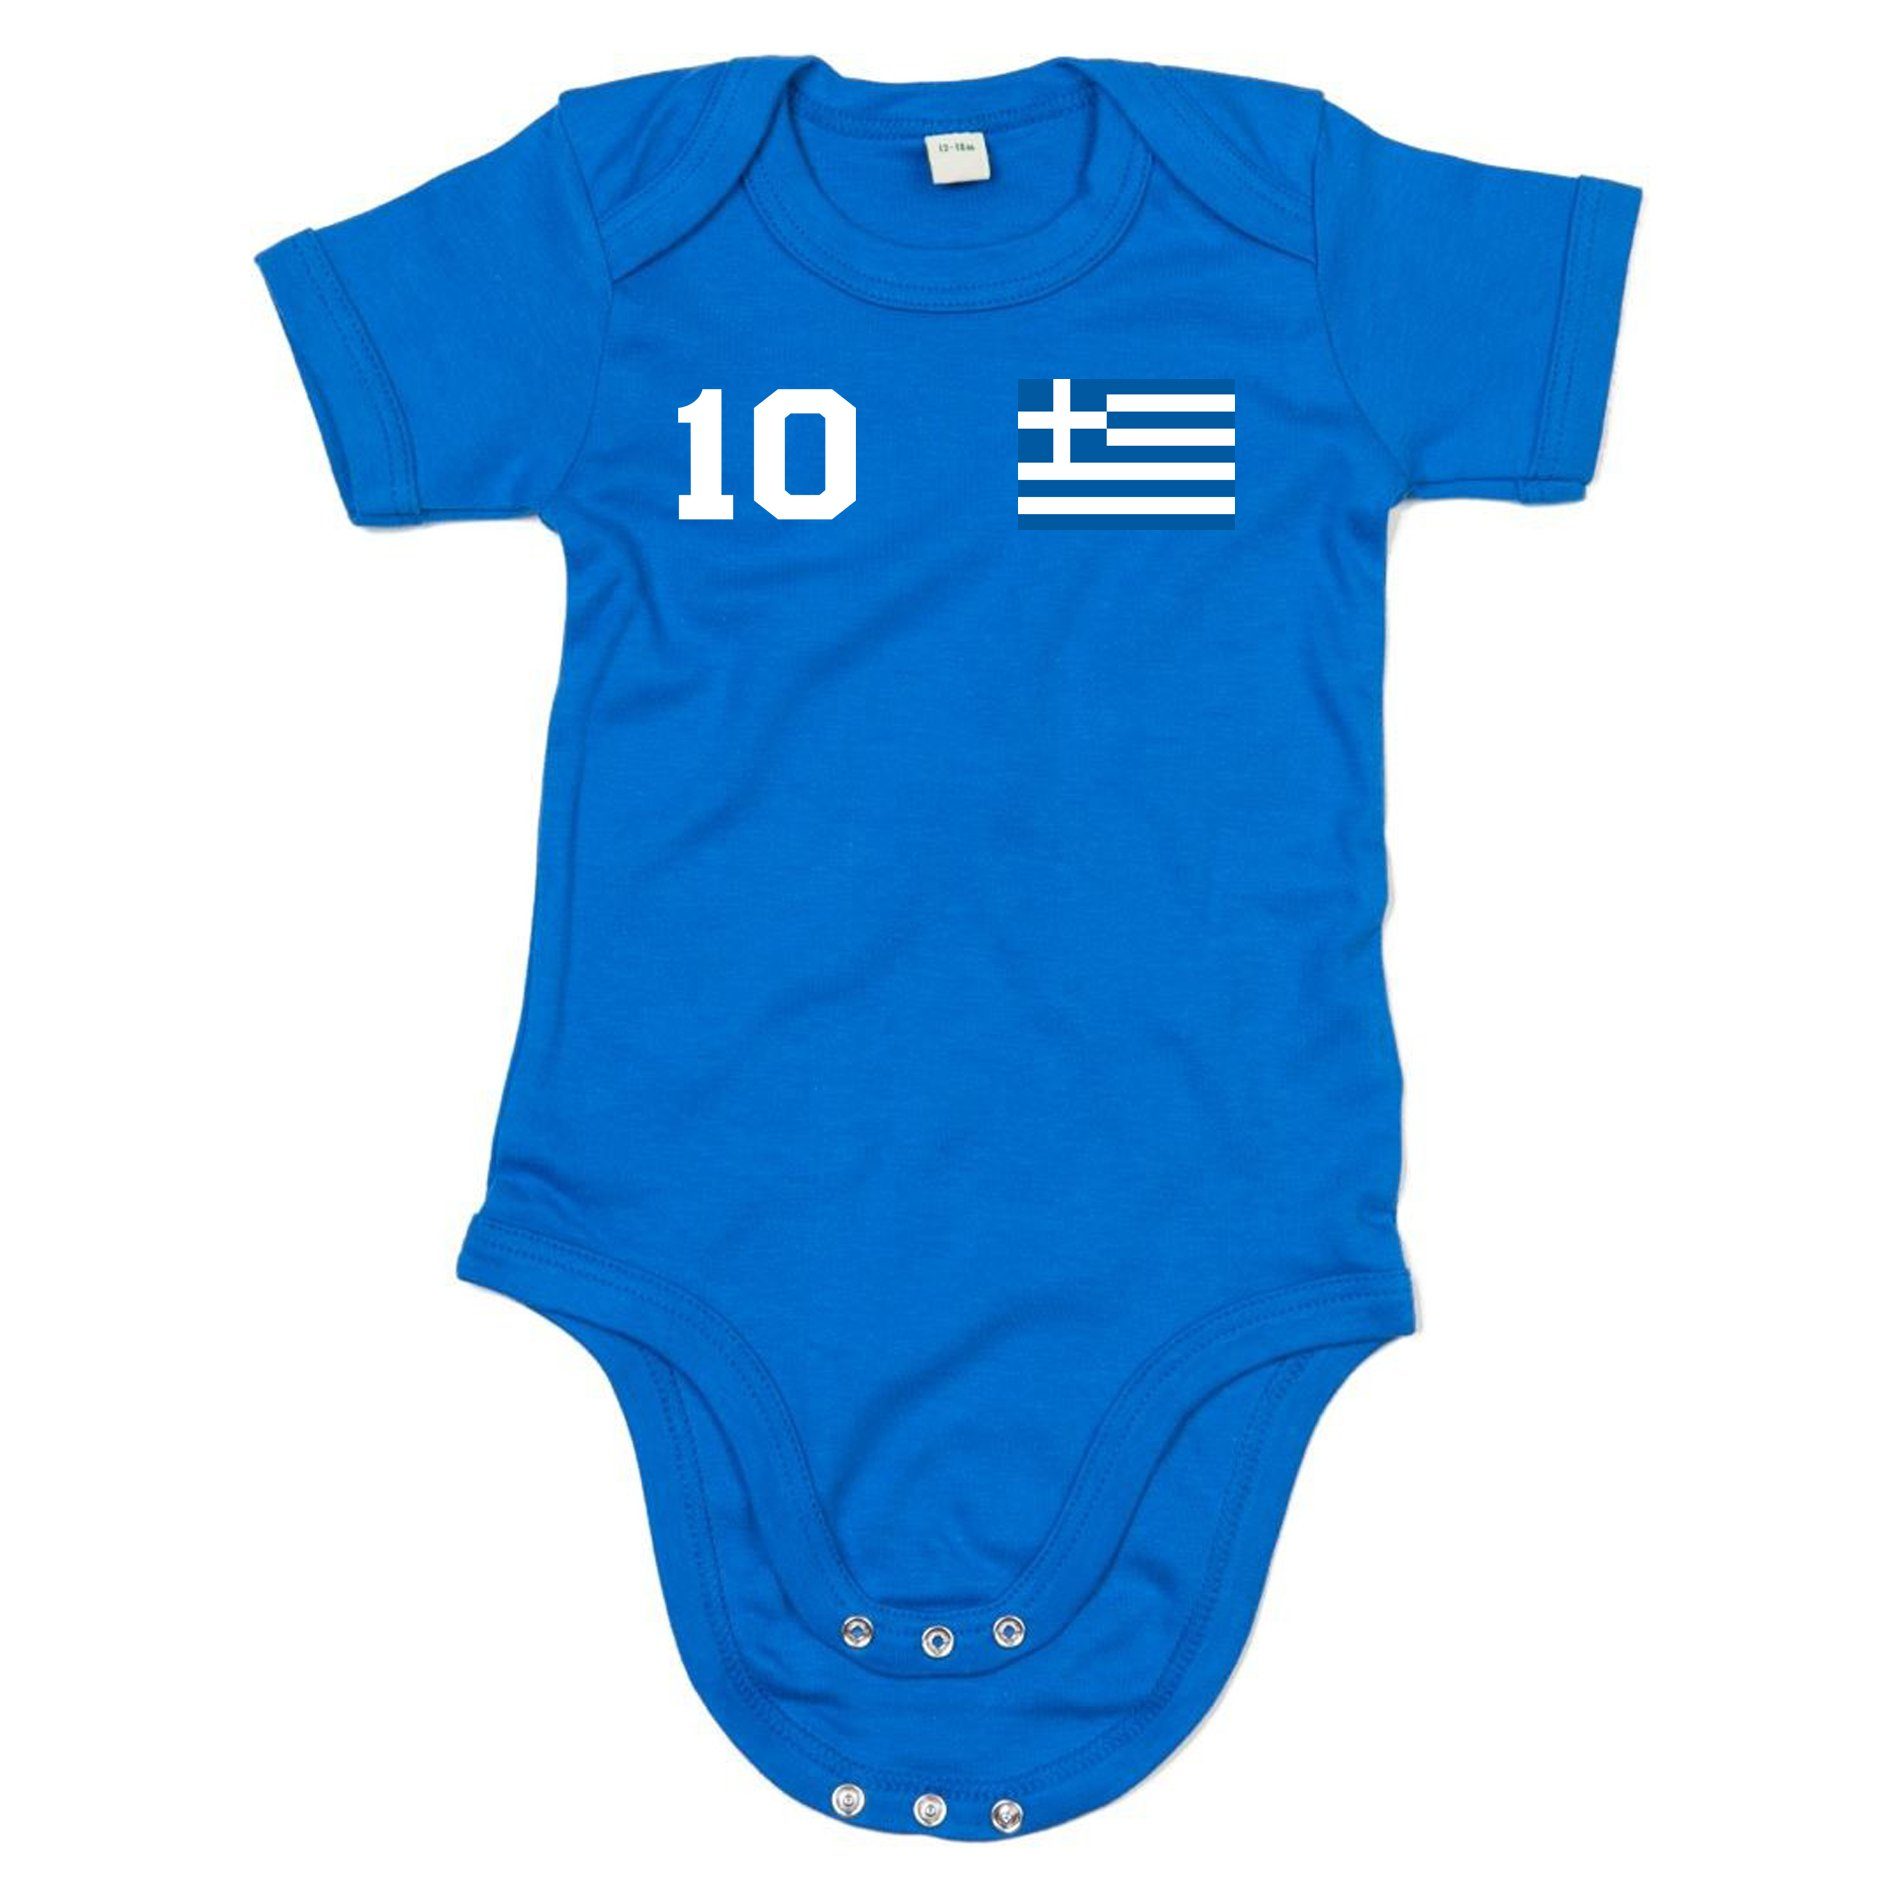 Griechenland Fussball Brownie Weiss/Blau Meister Sport Body Trikot Blondie Baby Strampler EM Kinder &